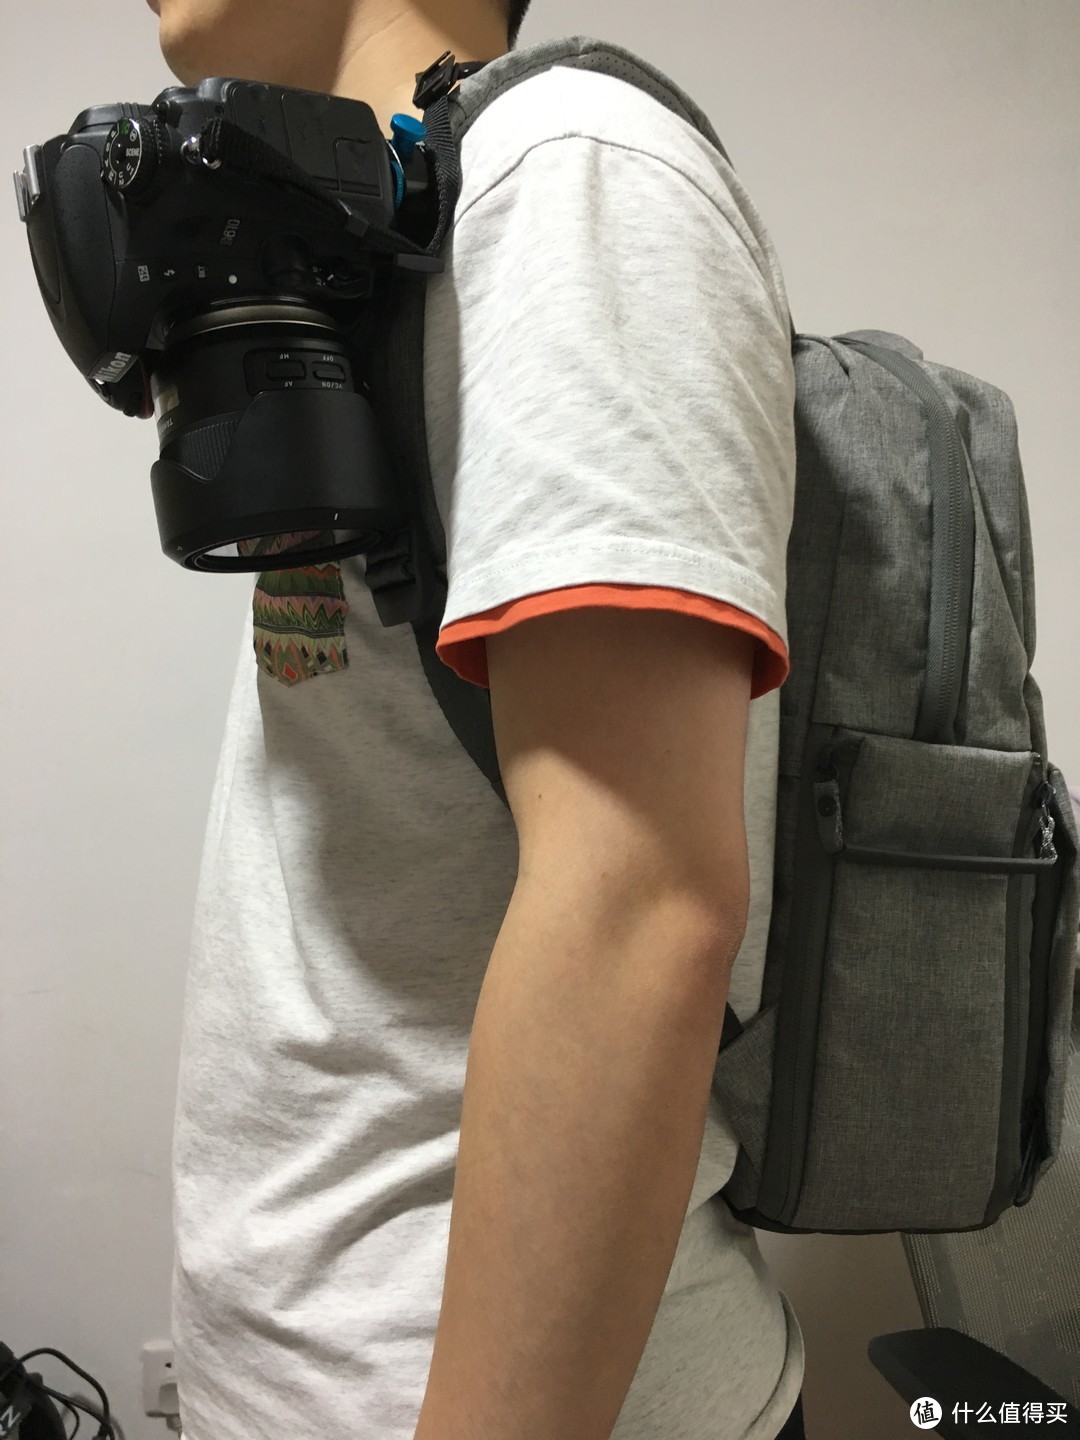 年轻人的第一款出街摄影包-宜丽客双肩旅行摄影包评测